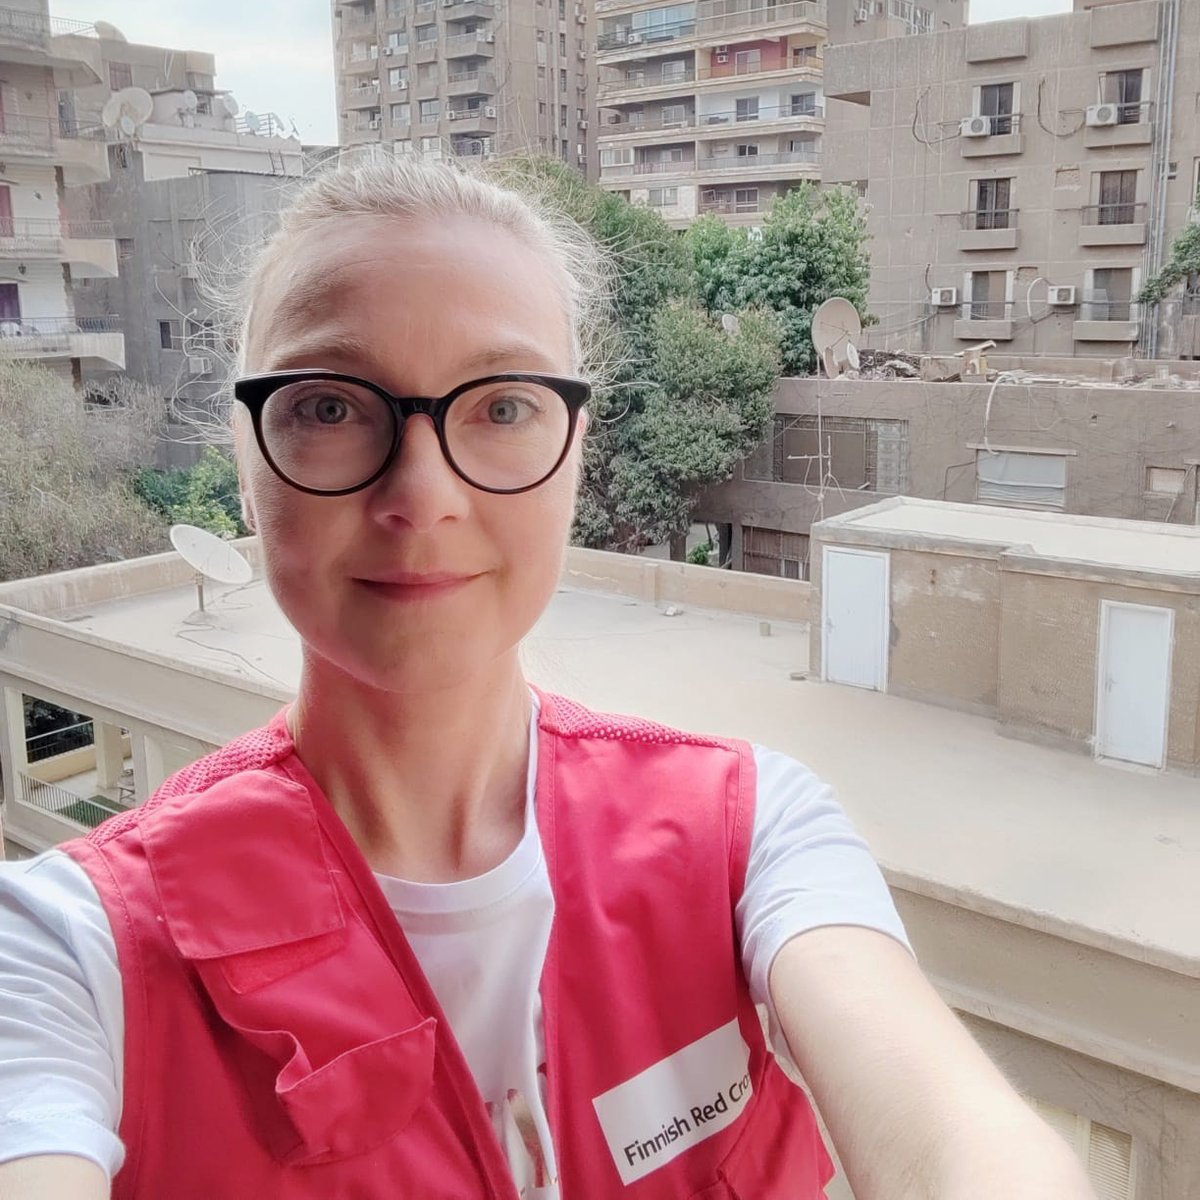 Jakamalla tämän toivotat Miialle paljon onnistumisia avustustyössä Gazassa.
Avustustyöntekijämme Miia Siurola työskentelee Punaisen Ristin kenttäsairaalassa Rafahissa. ”Olen erikoistunut lasten hoitamiseen ja se on intohimoni.'

1/3